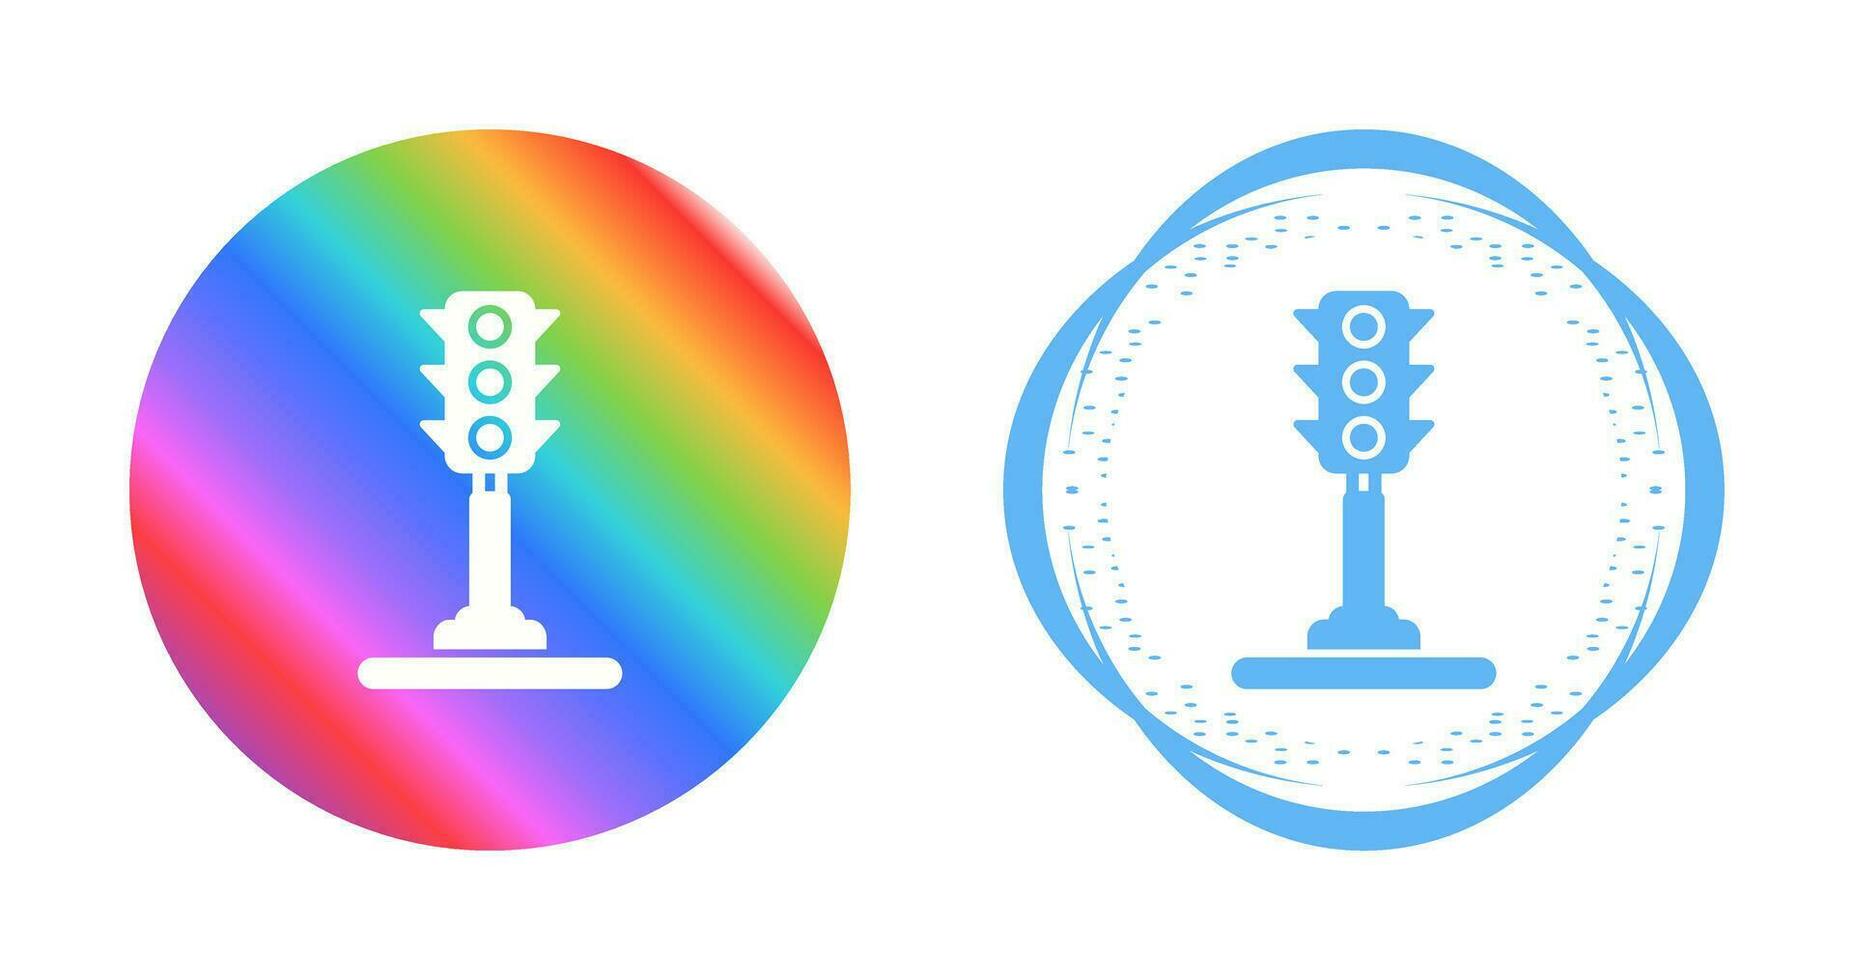 icono de vector de semáforo